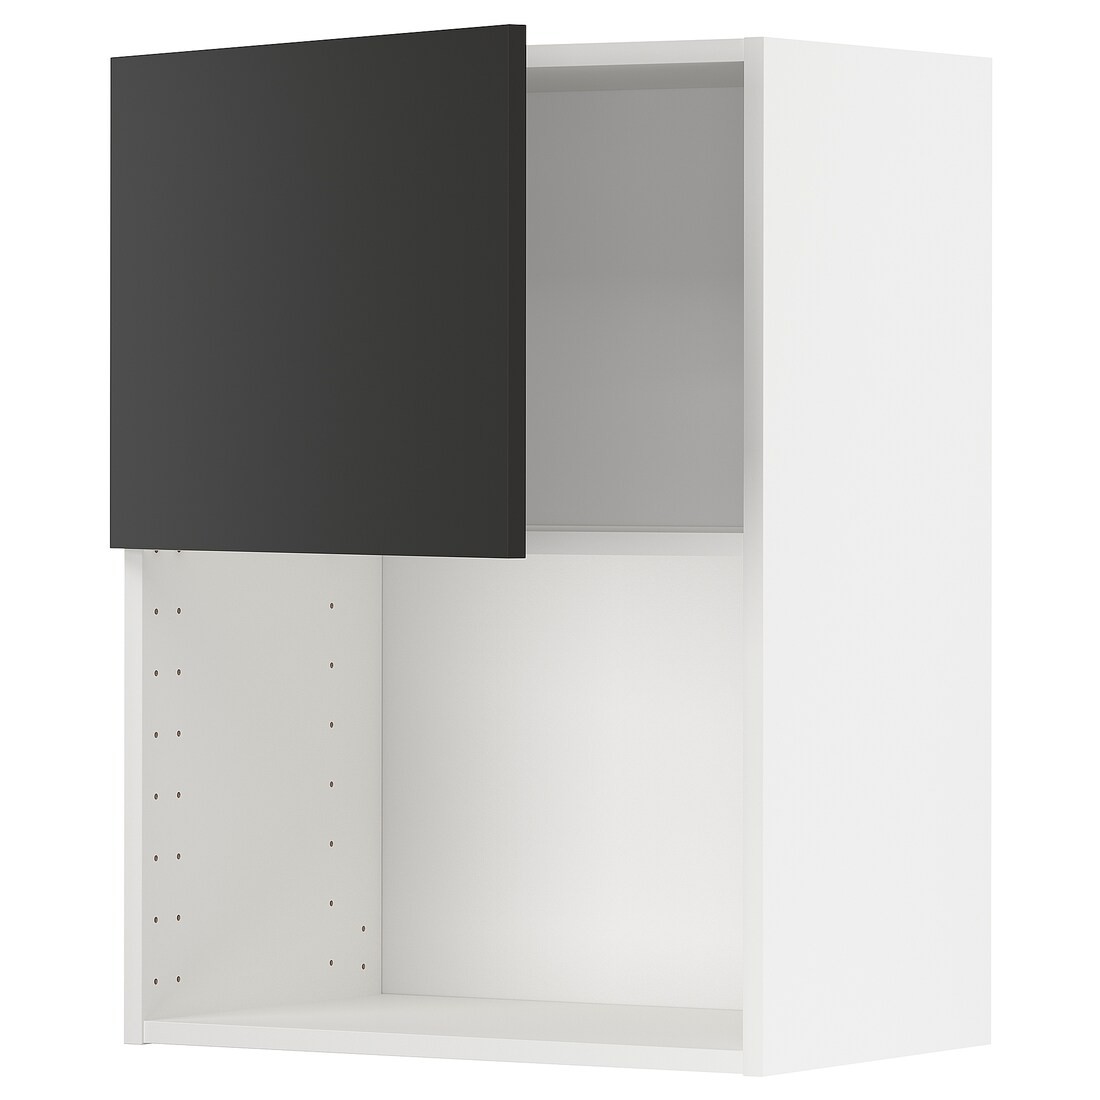 IKEA METOD МЕТОД Навесной шкаф для СВЧ-печи, белый / Nickebo матовый антрацит, 60x80 см 89498968 | 894.989.68